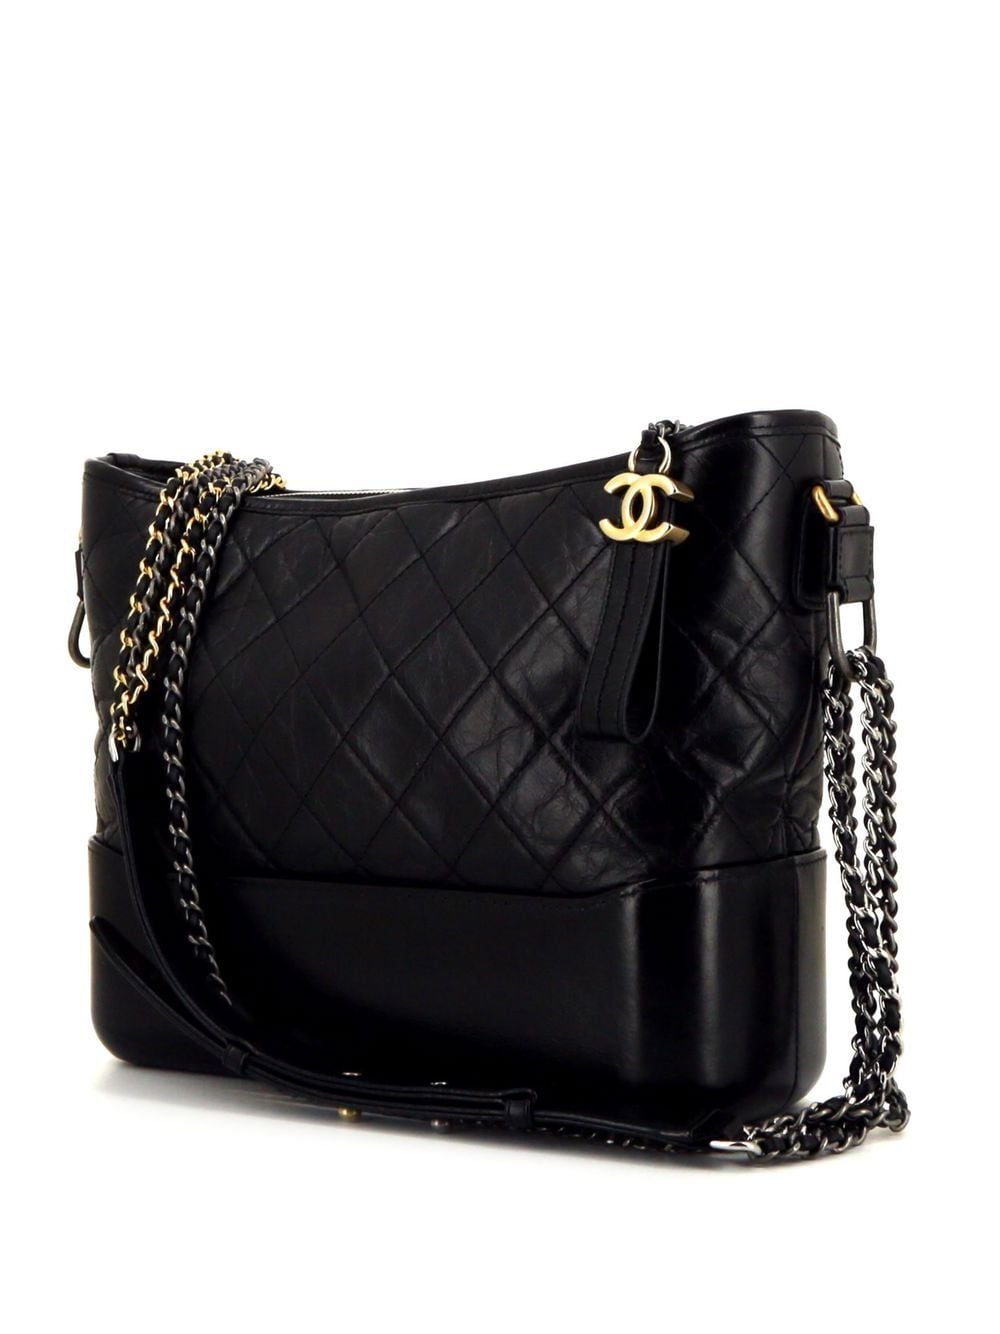 Chanel "The Gabrielle" Bag